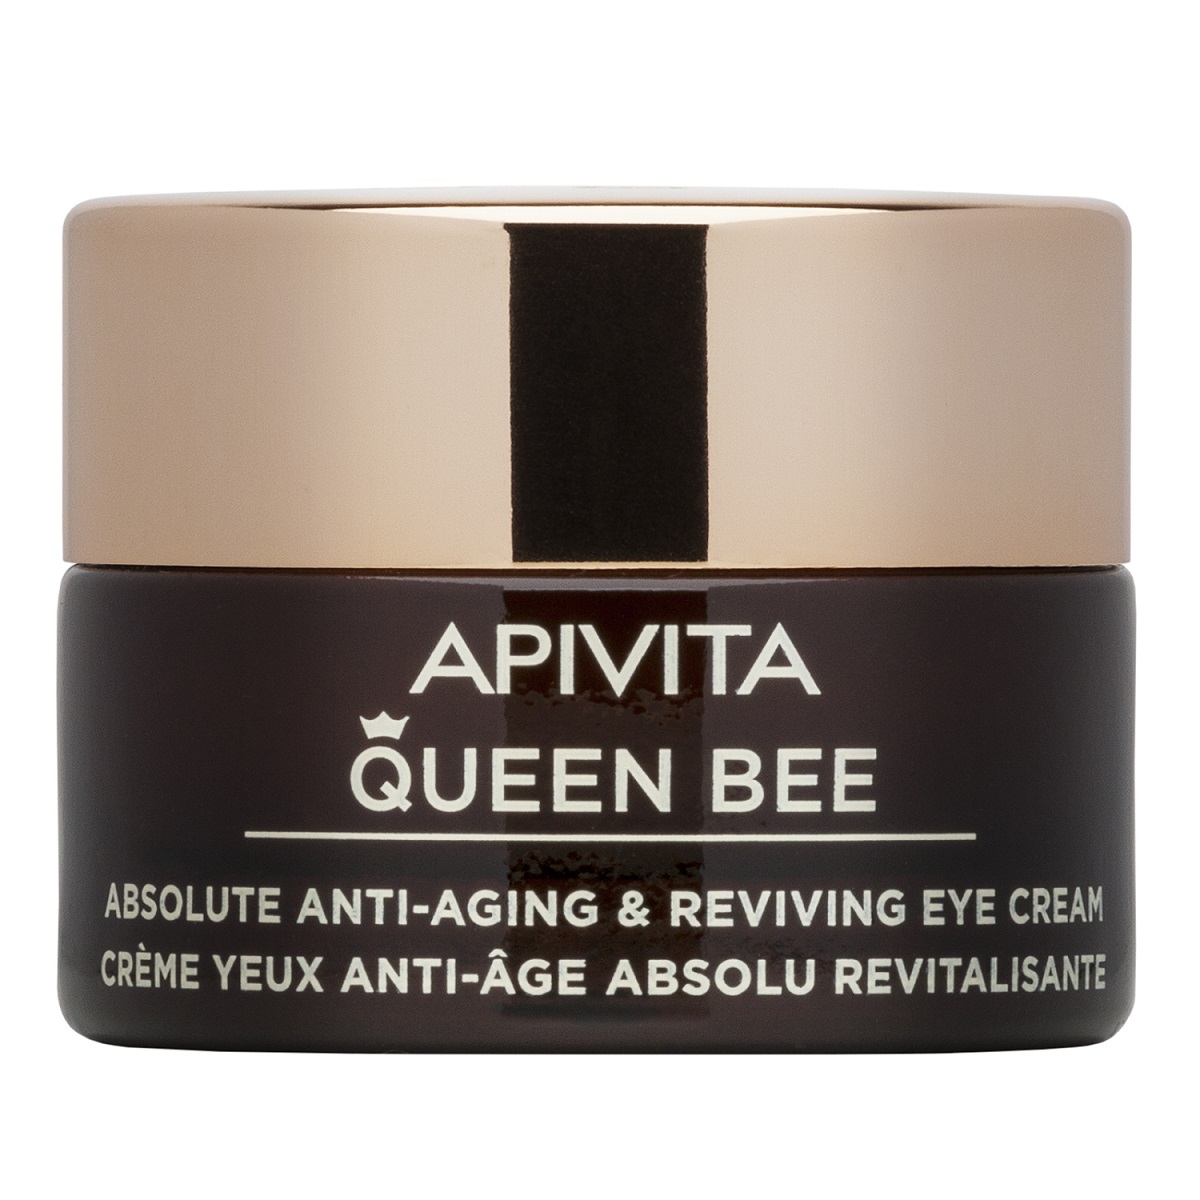 Apivita Комплексный антивозрастной восстанавливающий крем для кожи контура глаз, 15 мл (Apivita, Queen Bee) крем для кожи вокруг глаз apivita queen bee 15 мл